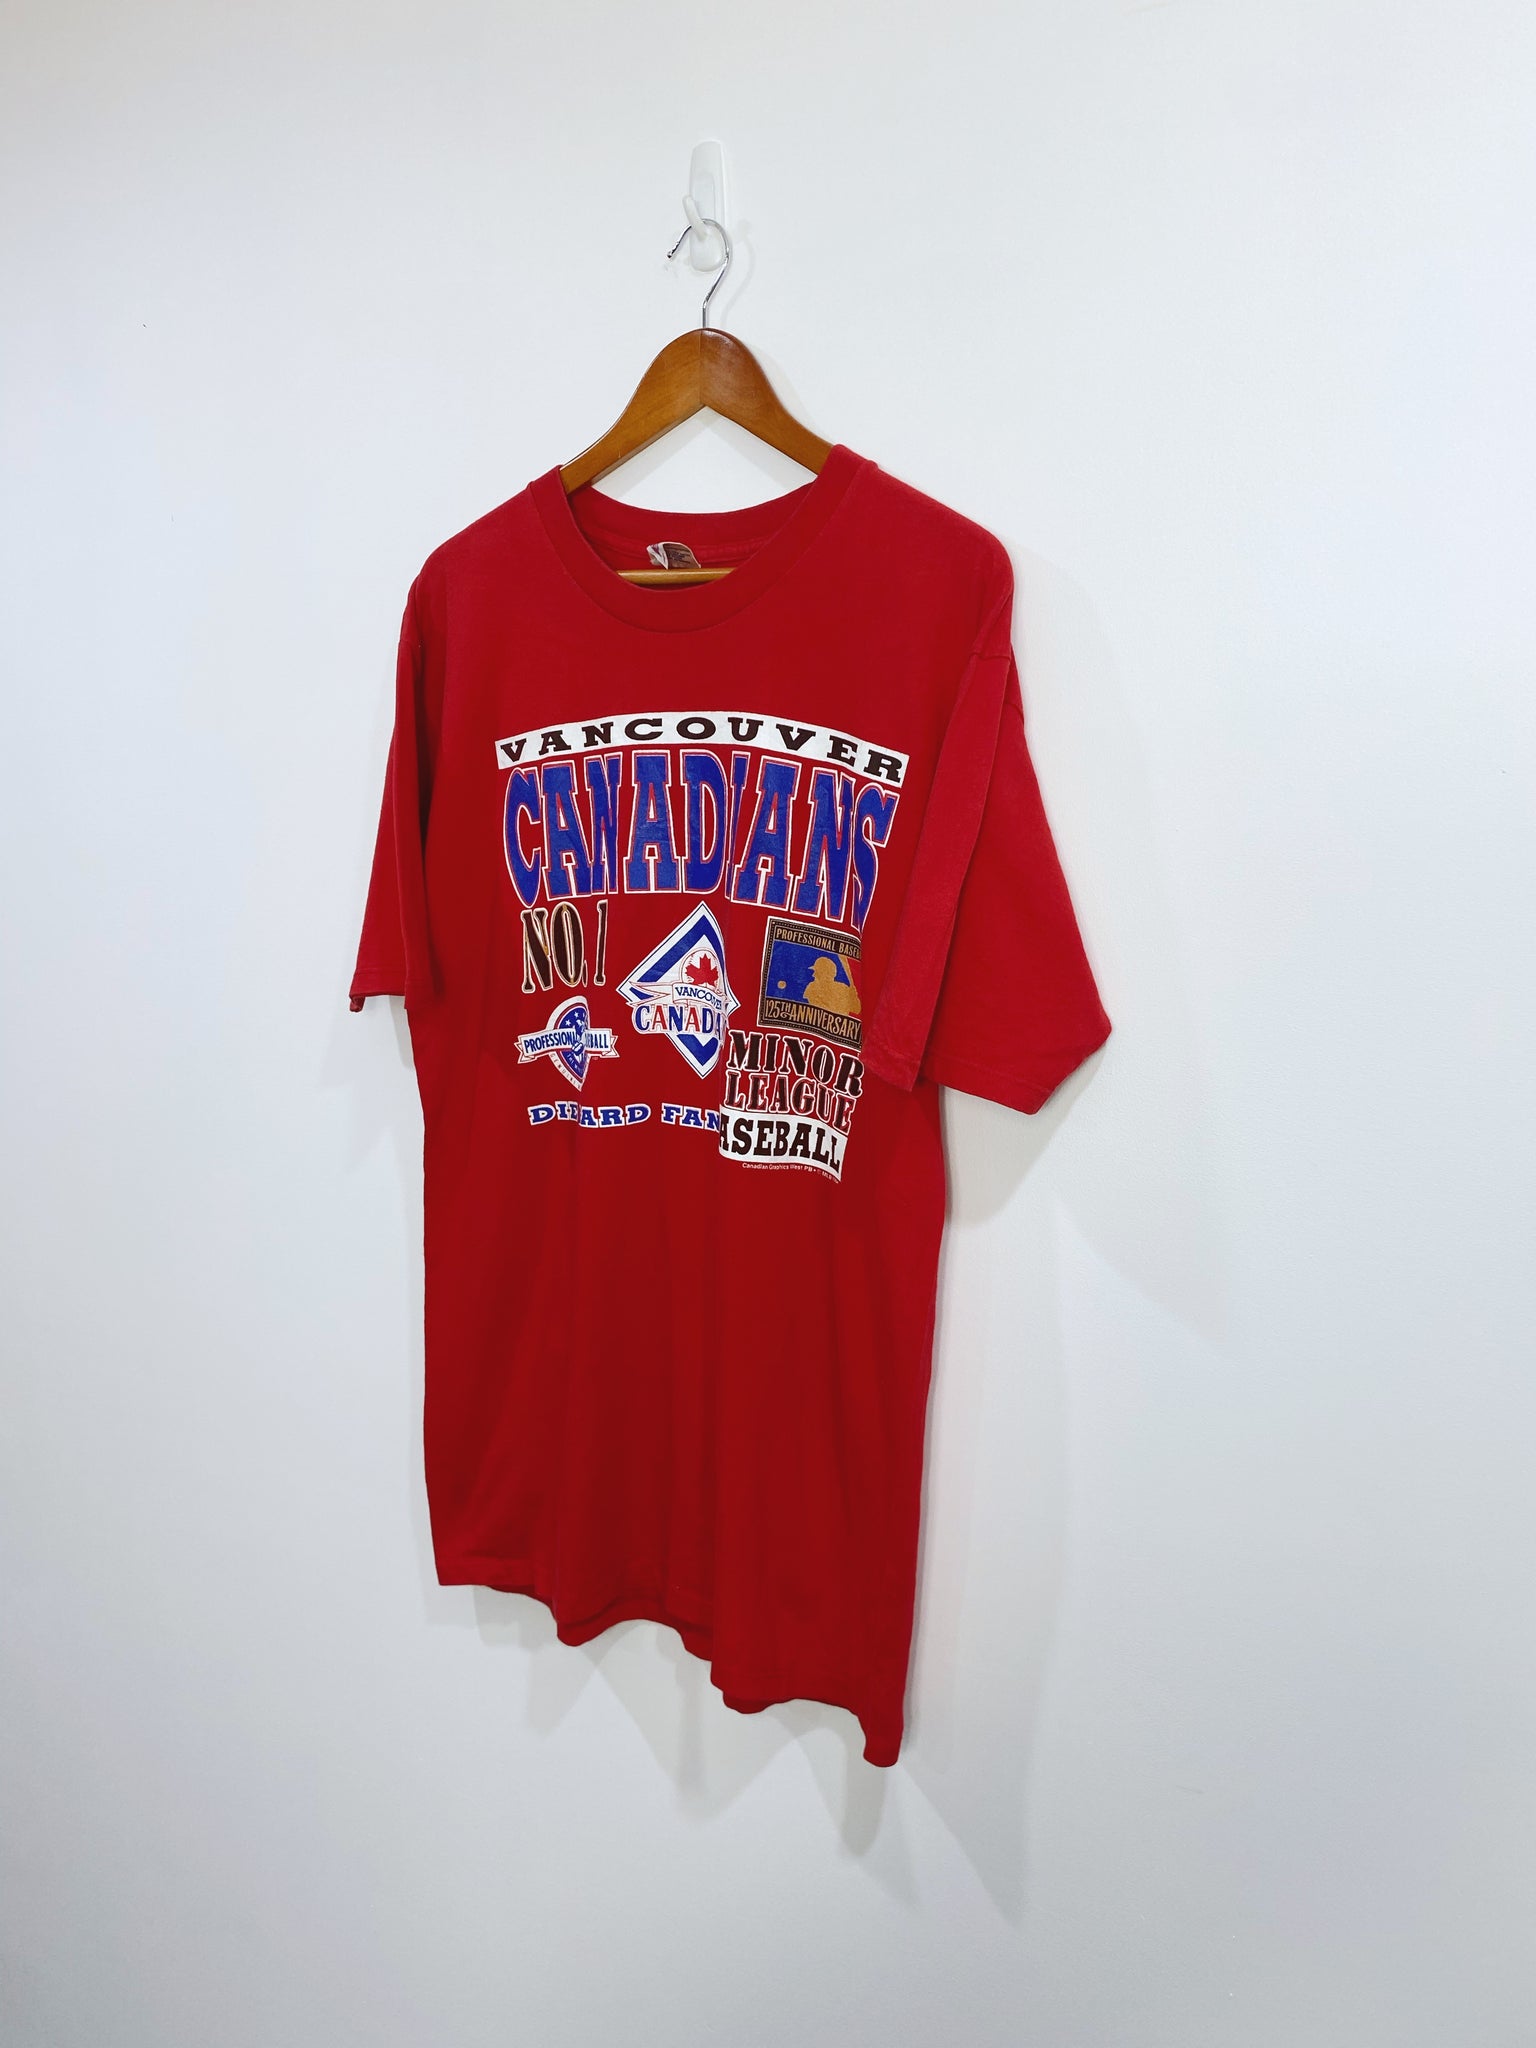 Vintage 1994 Vancouver Canadians T-shirt L